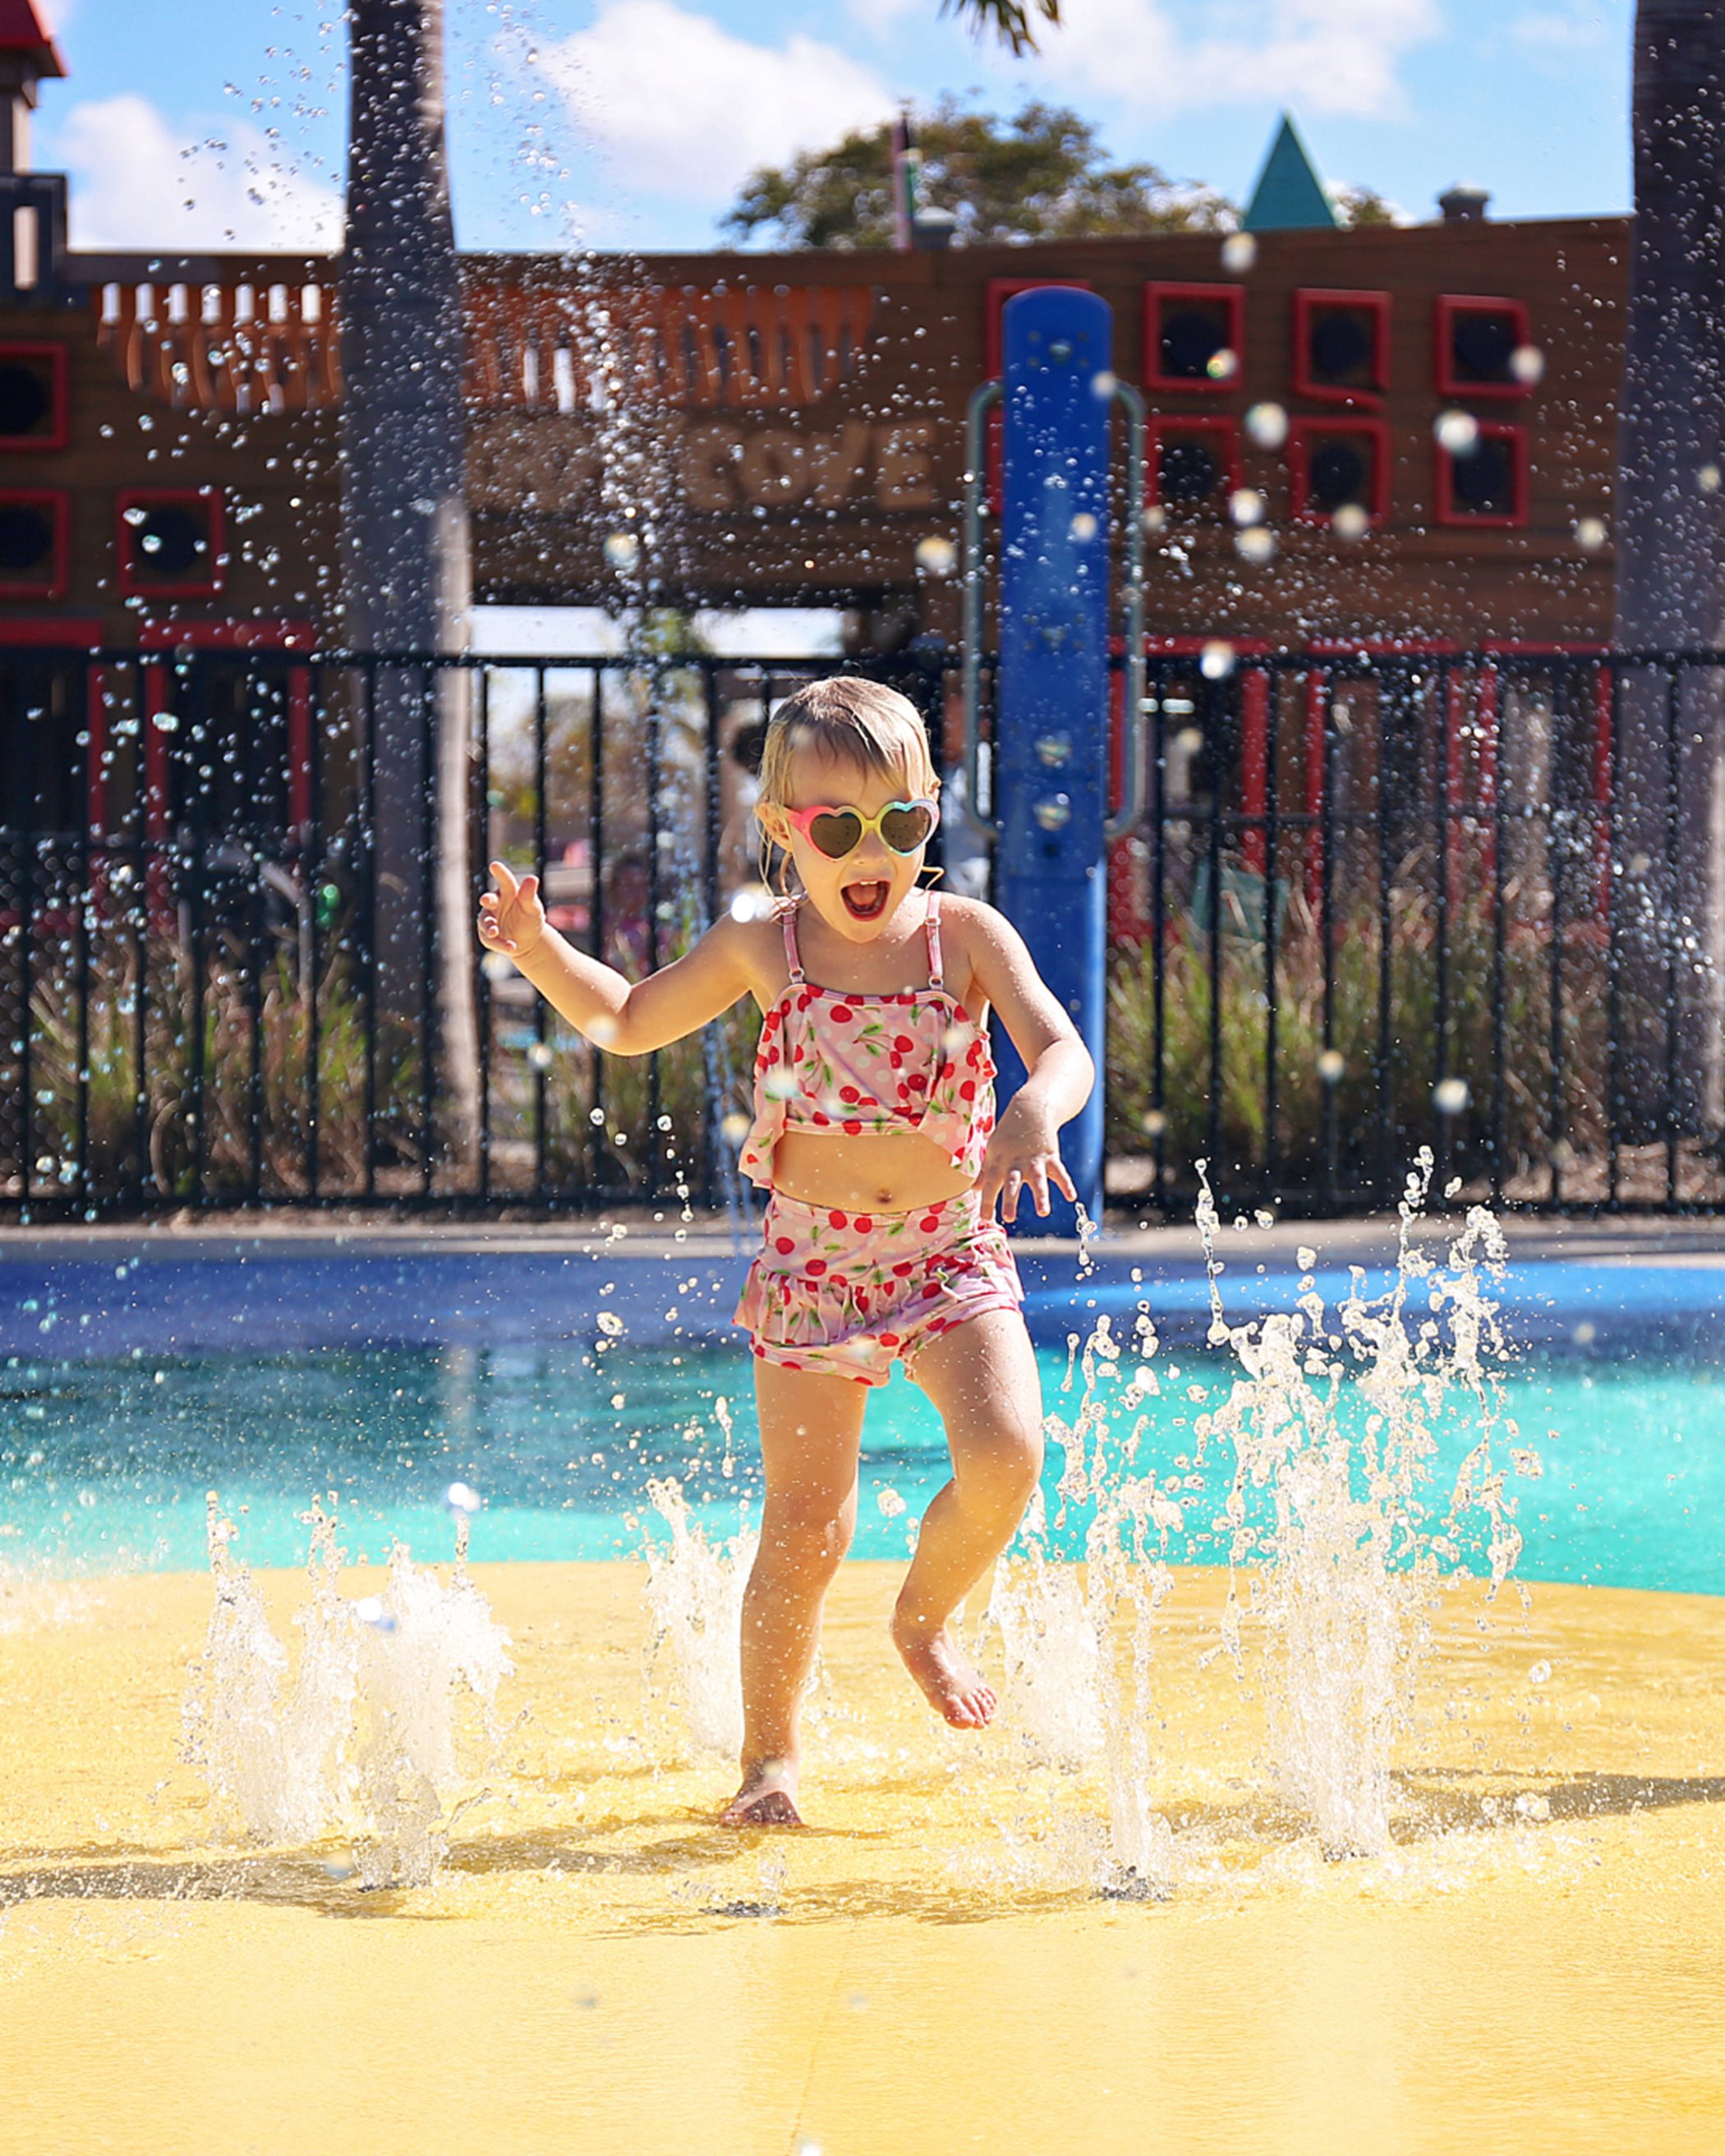 Little girl playing in splash park